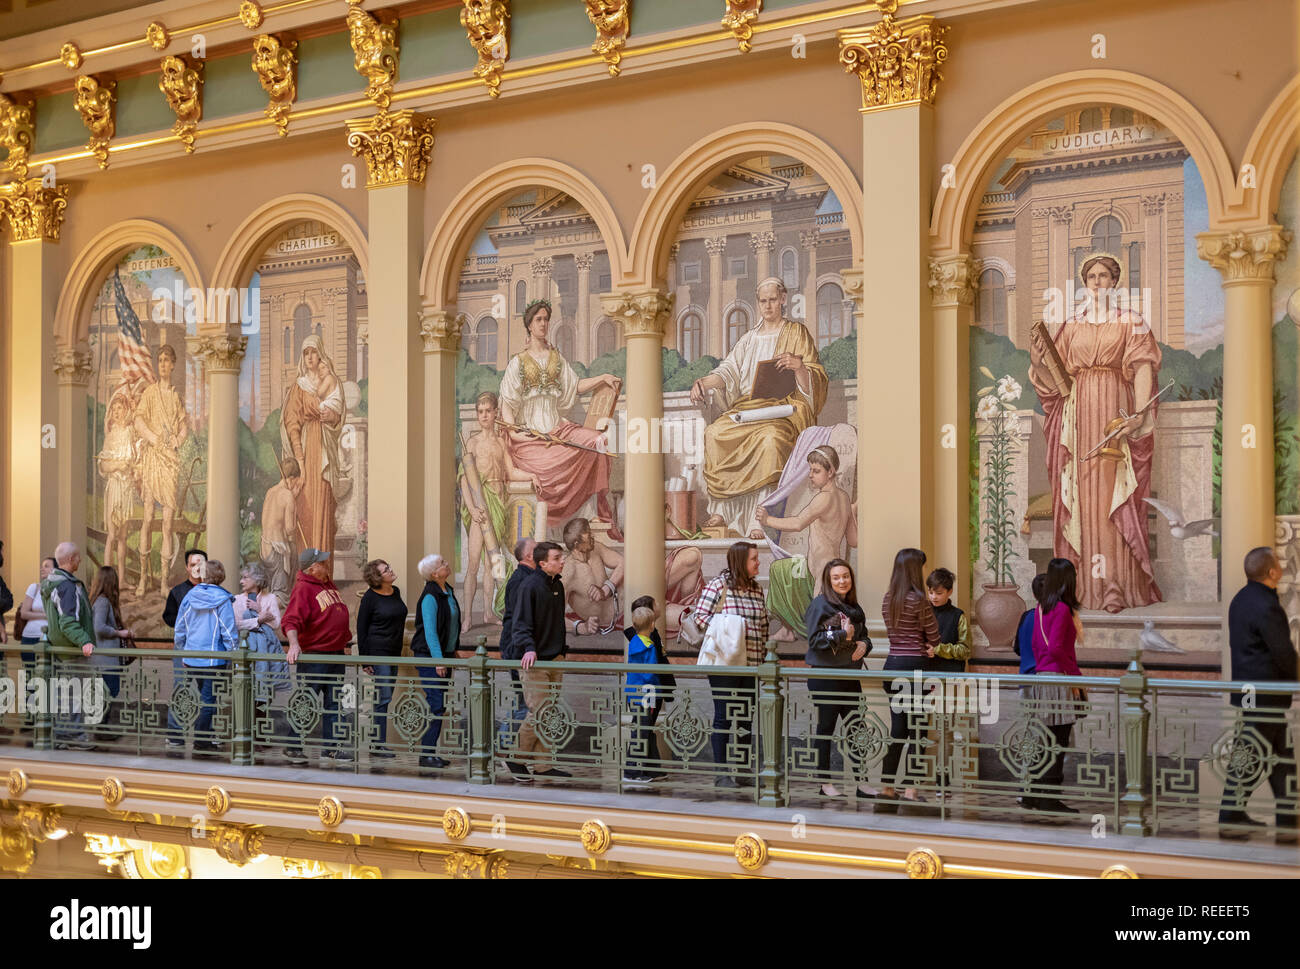 Des Moines, Iowa - das Innere der Iowa State Capitol Building. Eine Reisegruppe views Mosaiken in Italien aus farbigem Glas. Stockfoto